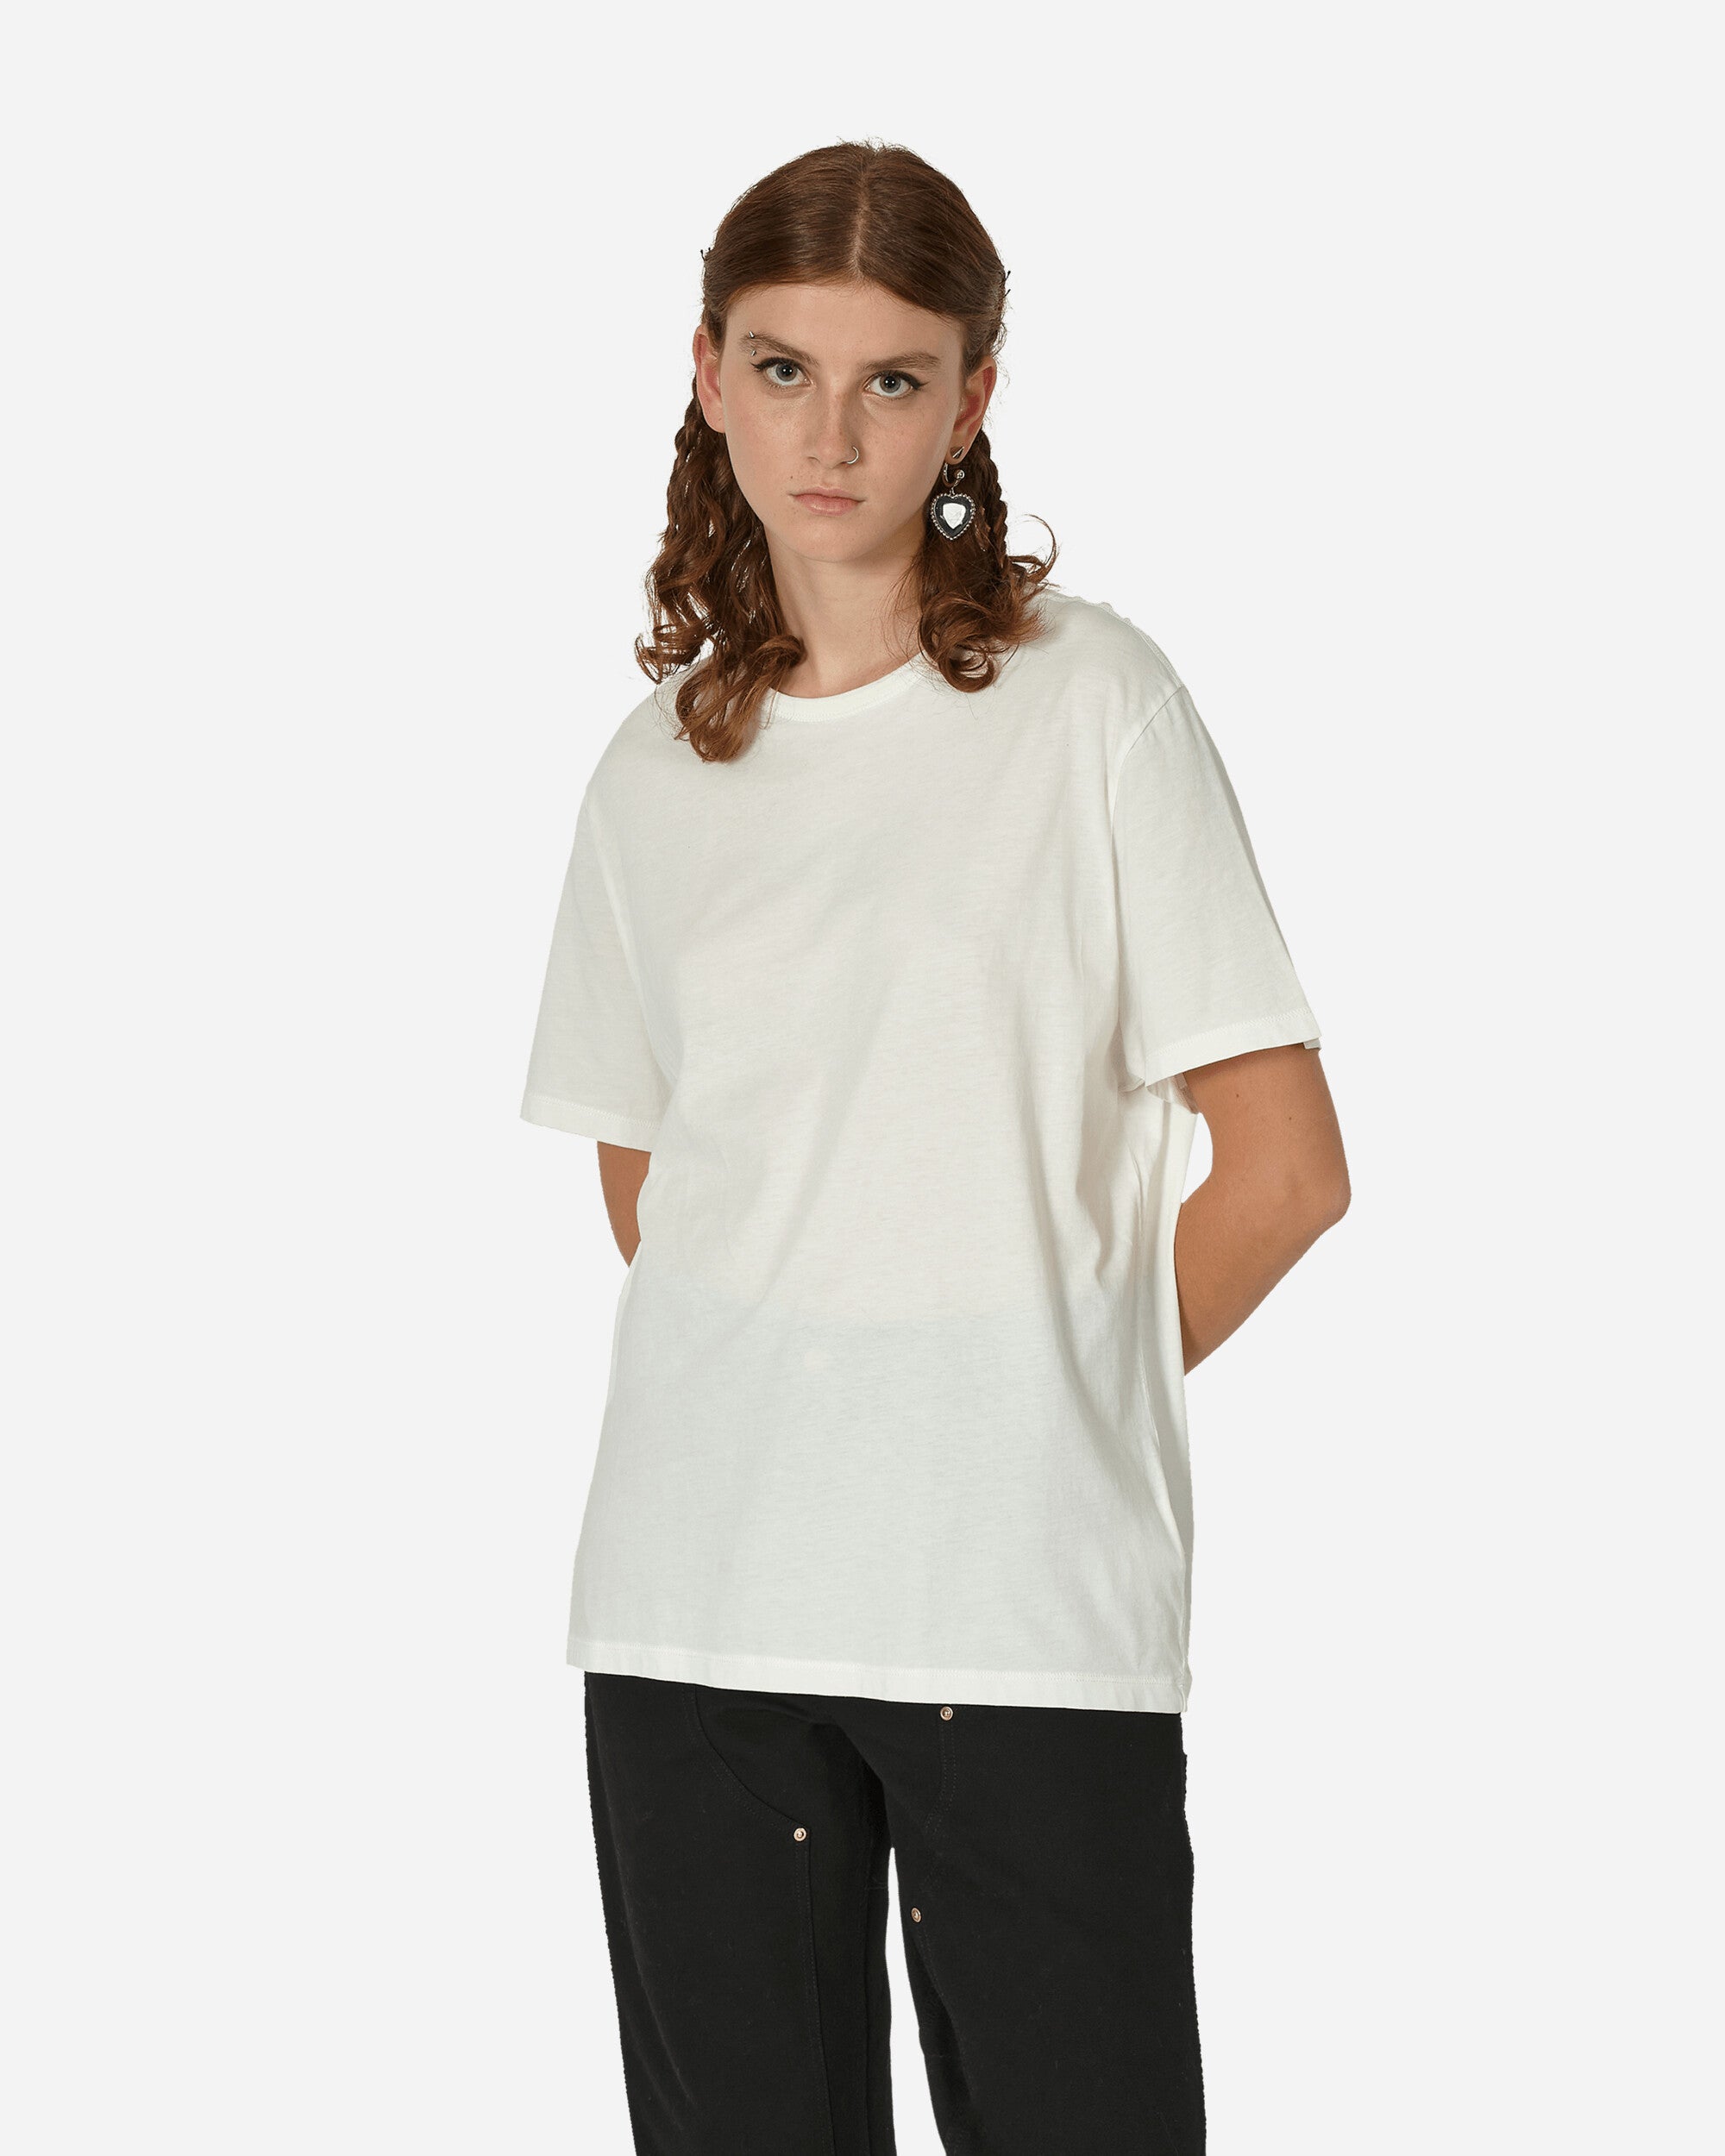 New Box T-Shirt White